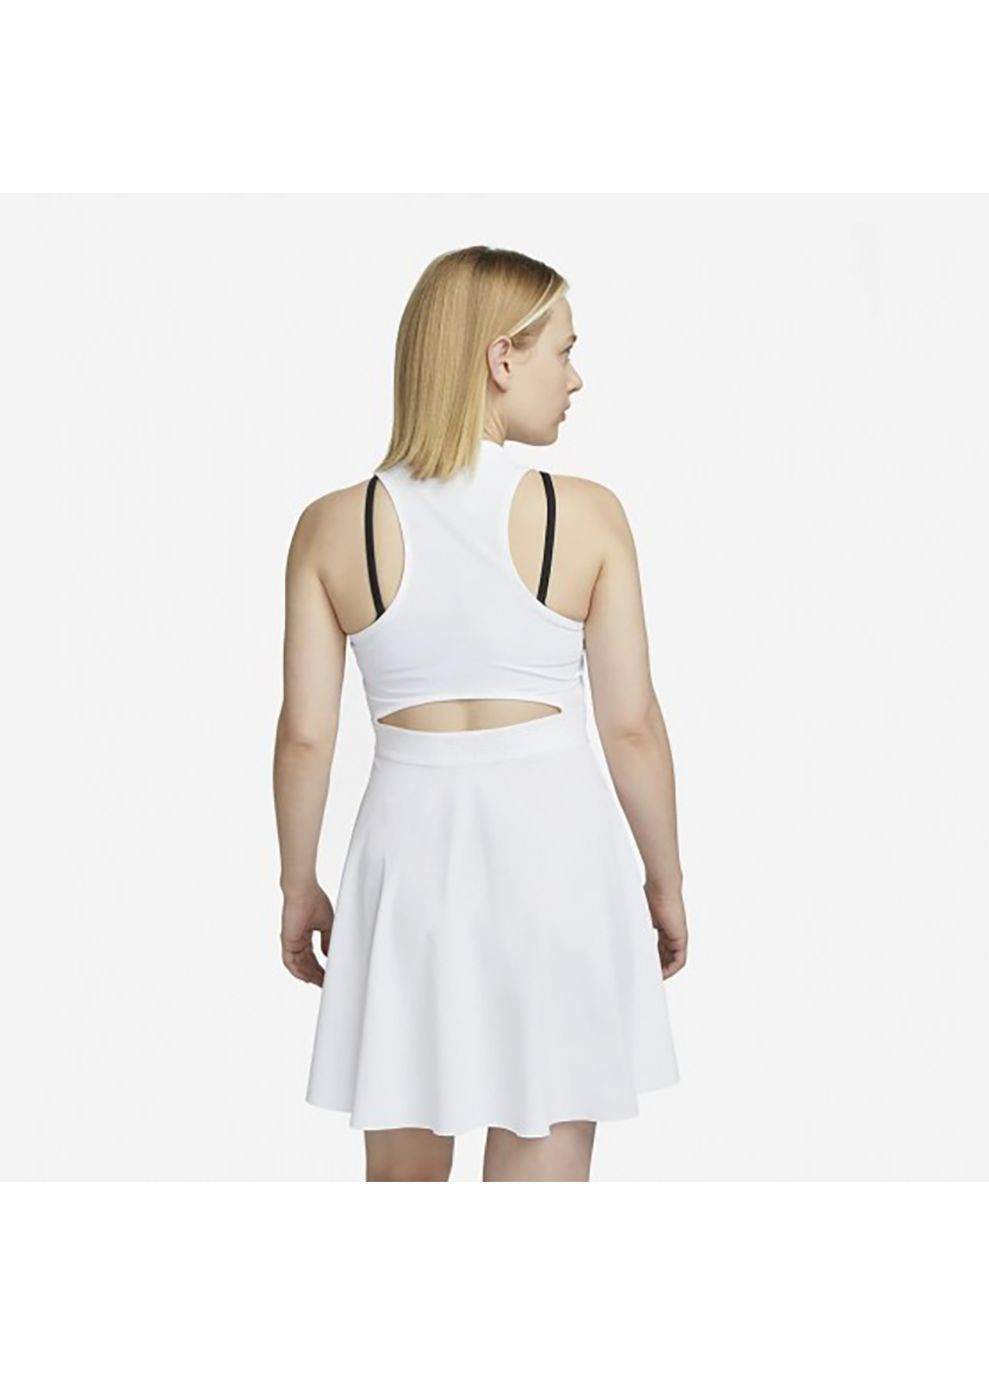 Белое спортивное женское платье df advtg dress белый Nike однотонное